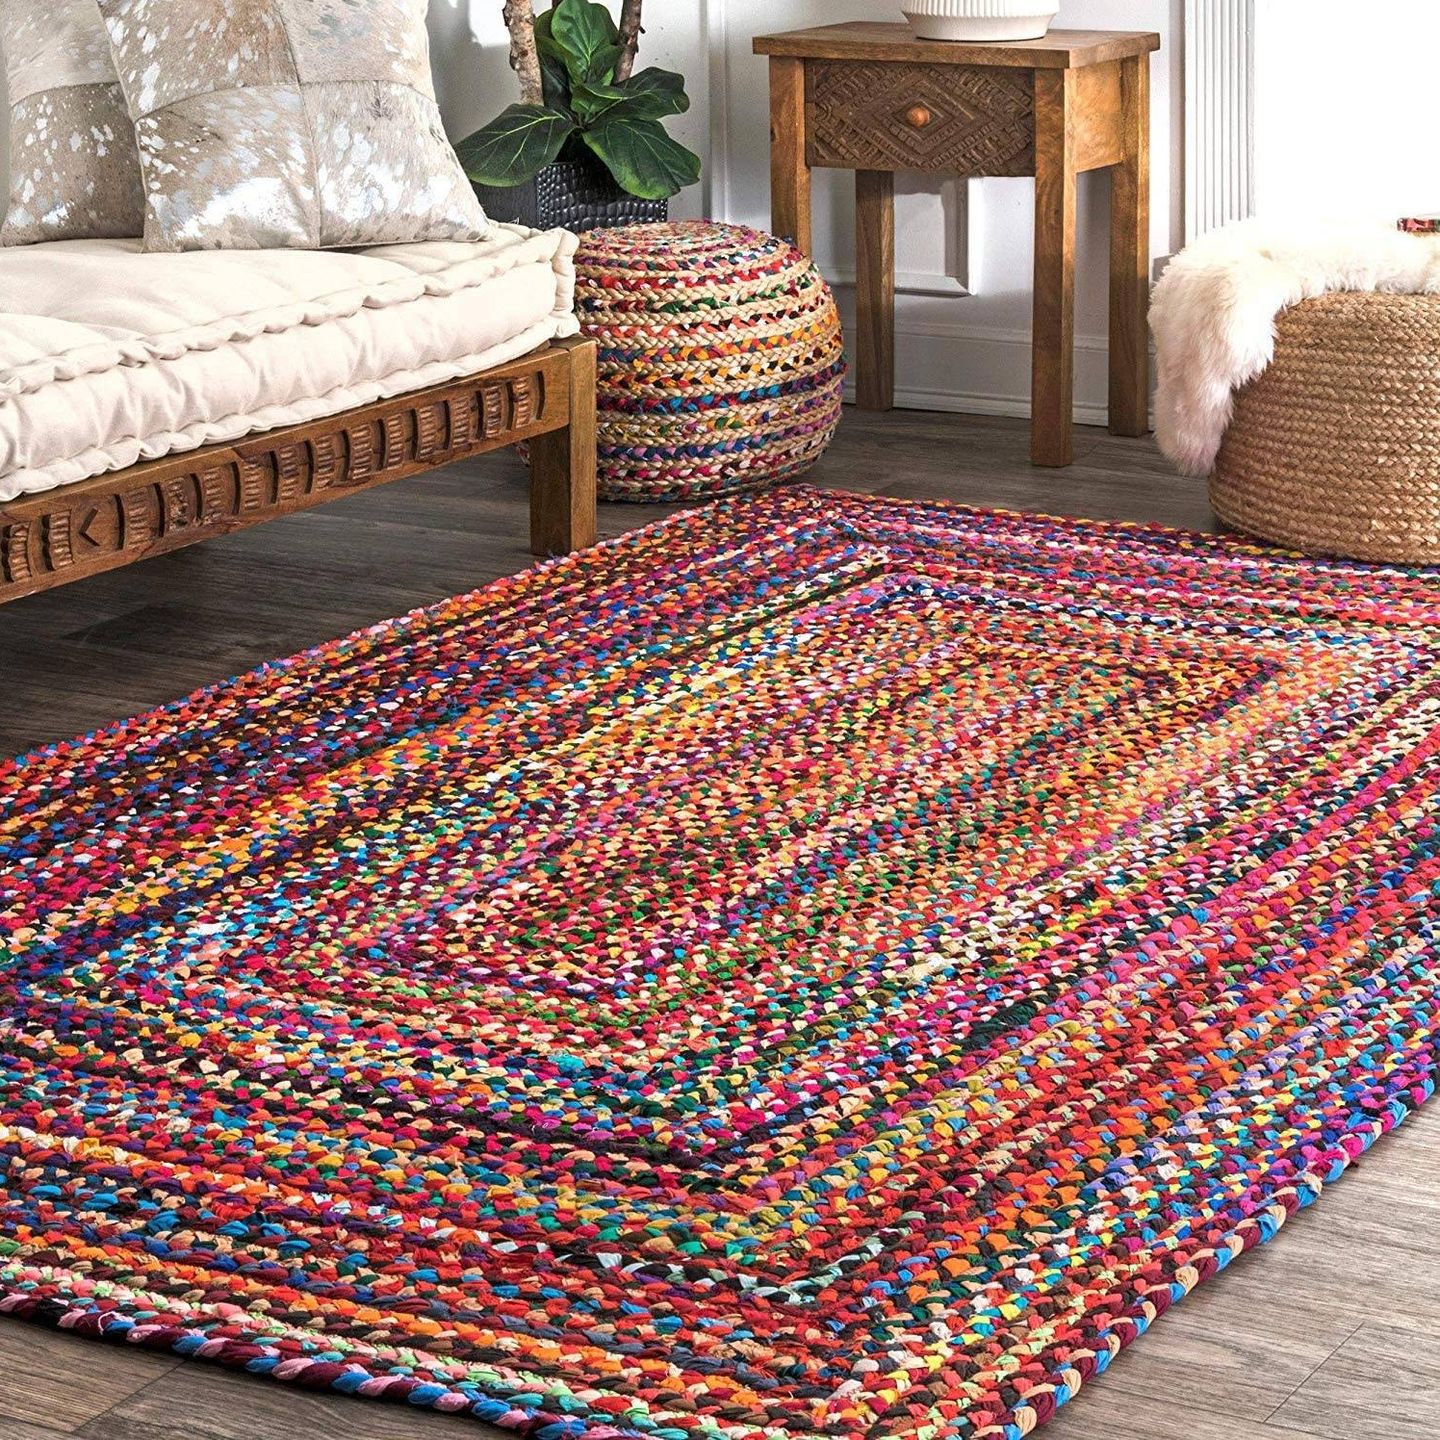 La alfombra multicolor que vende Amazon. (Cortesía)